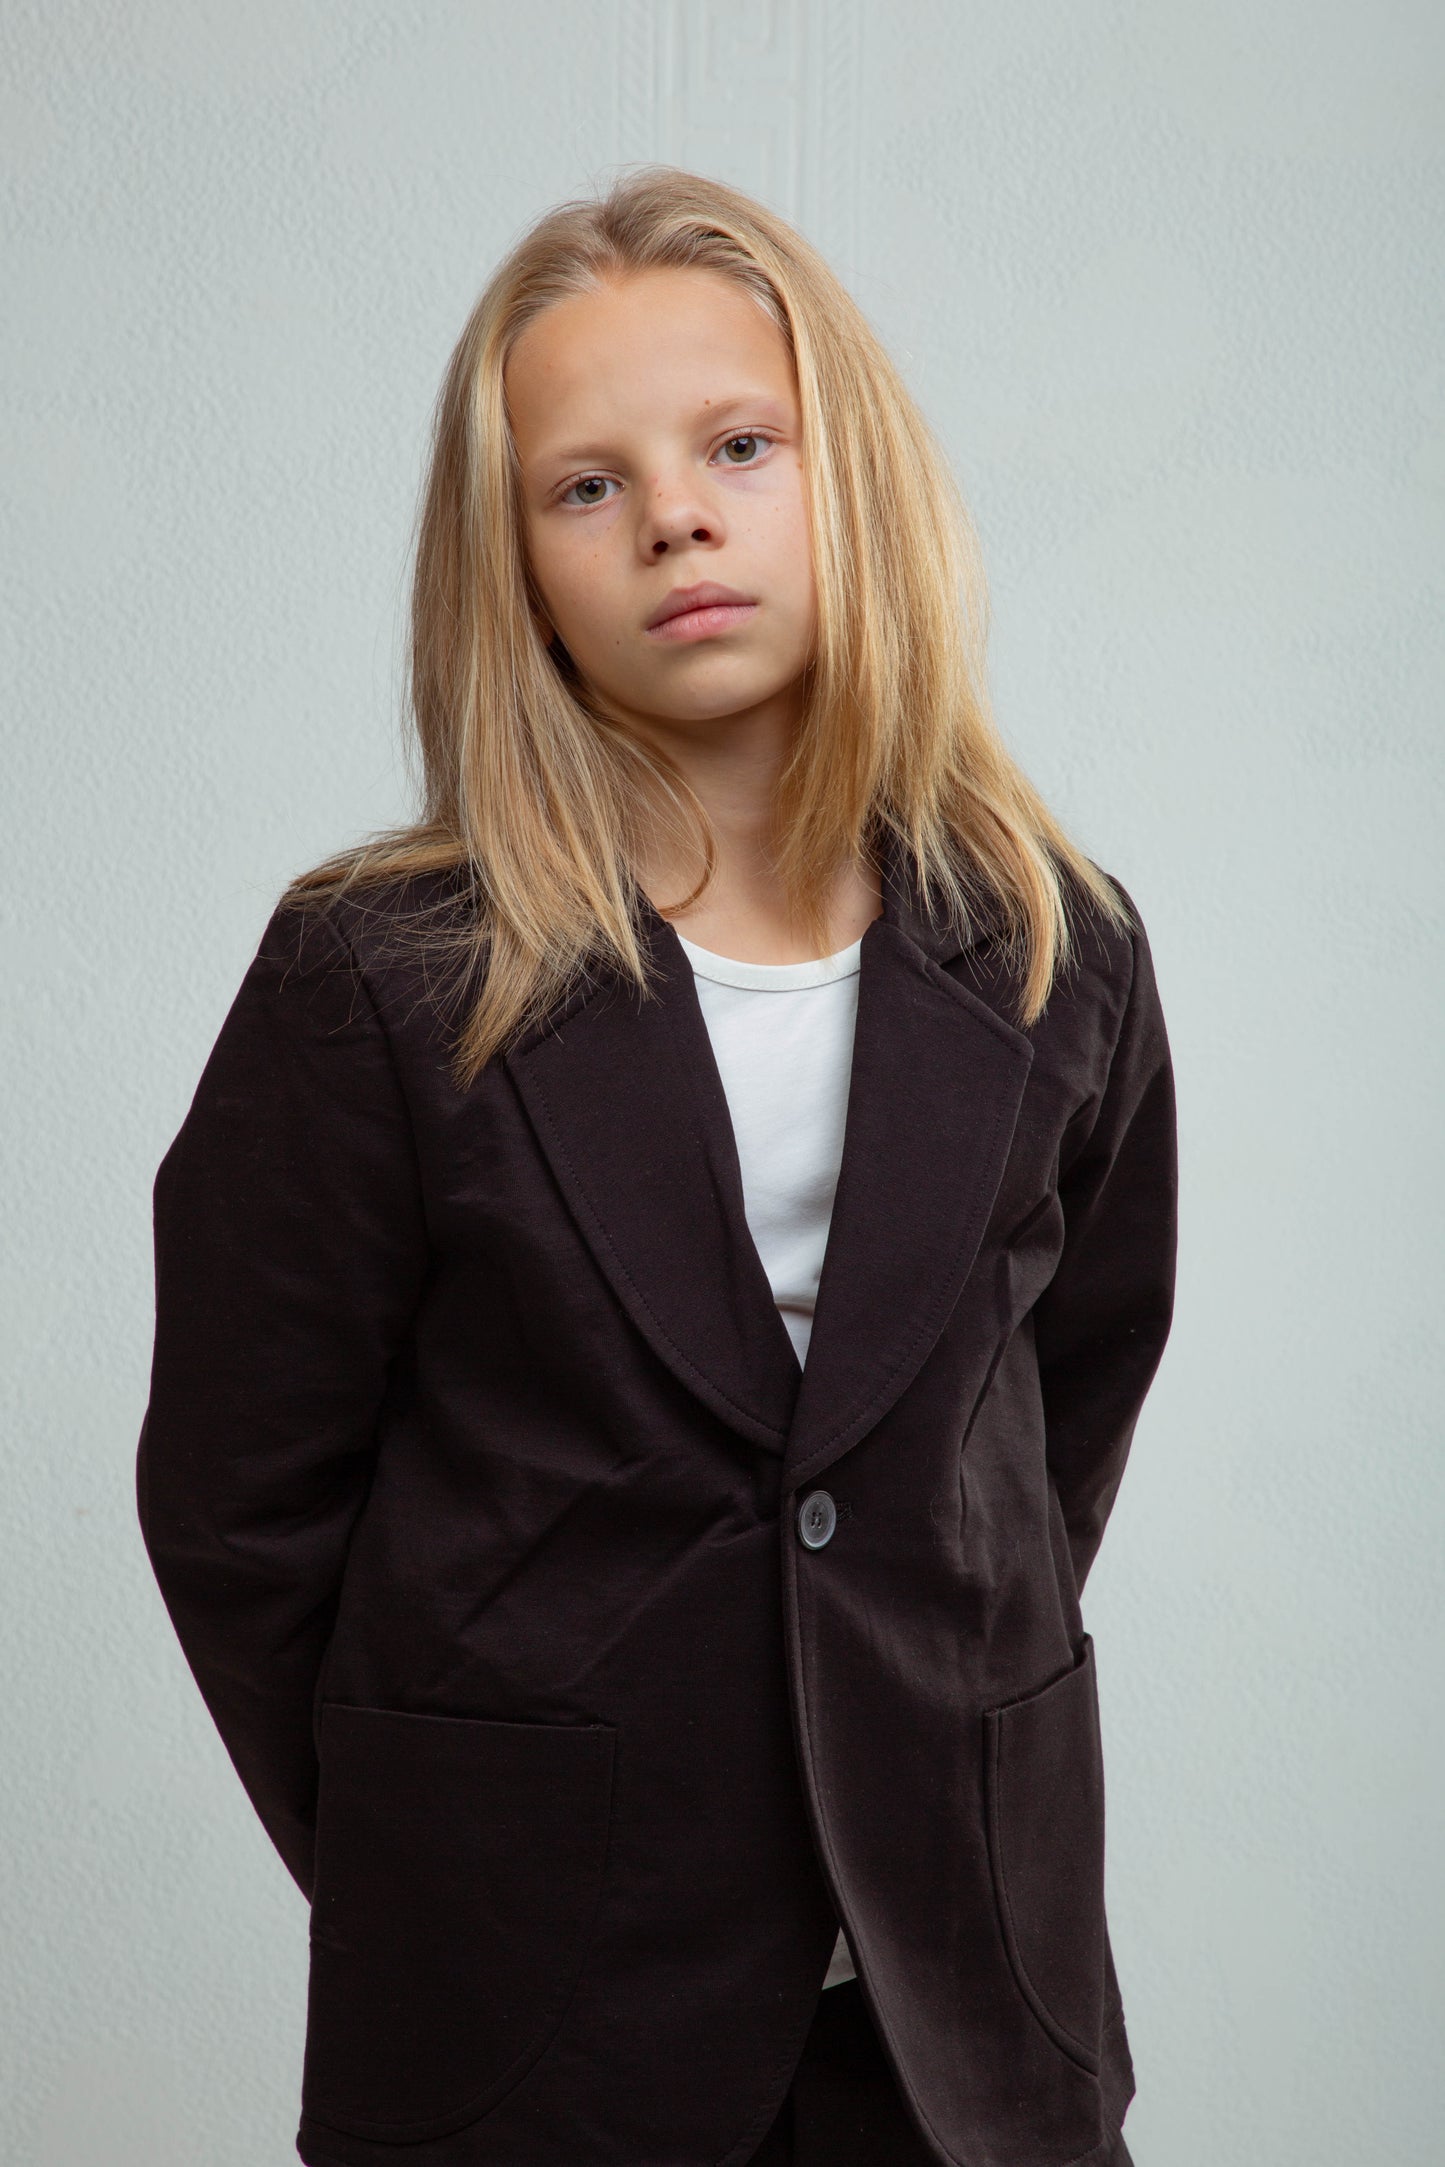 Children's 100% Cotton Lycra 3-Piece Suit